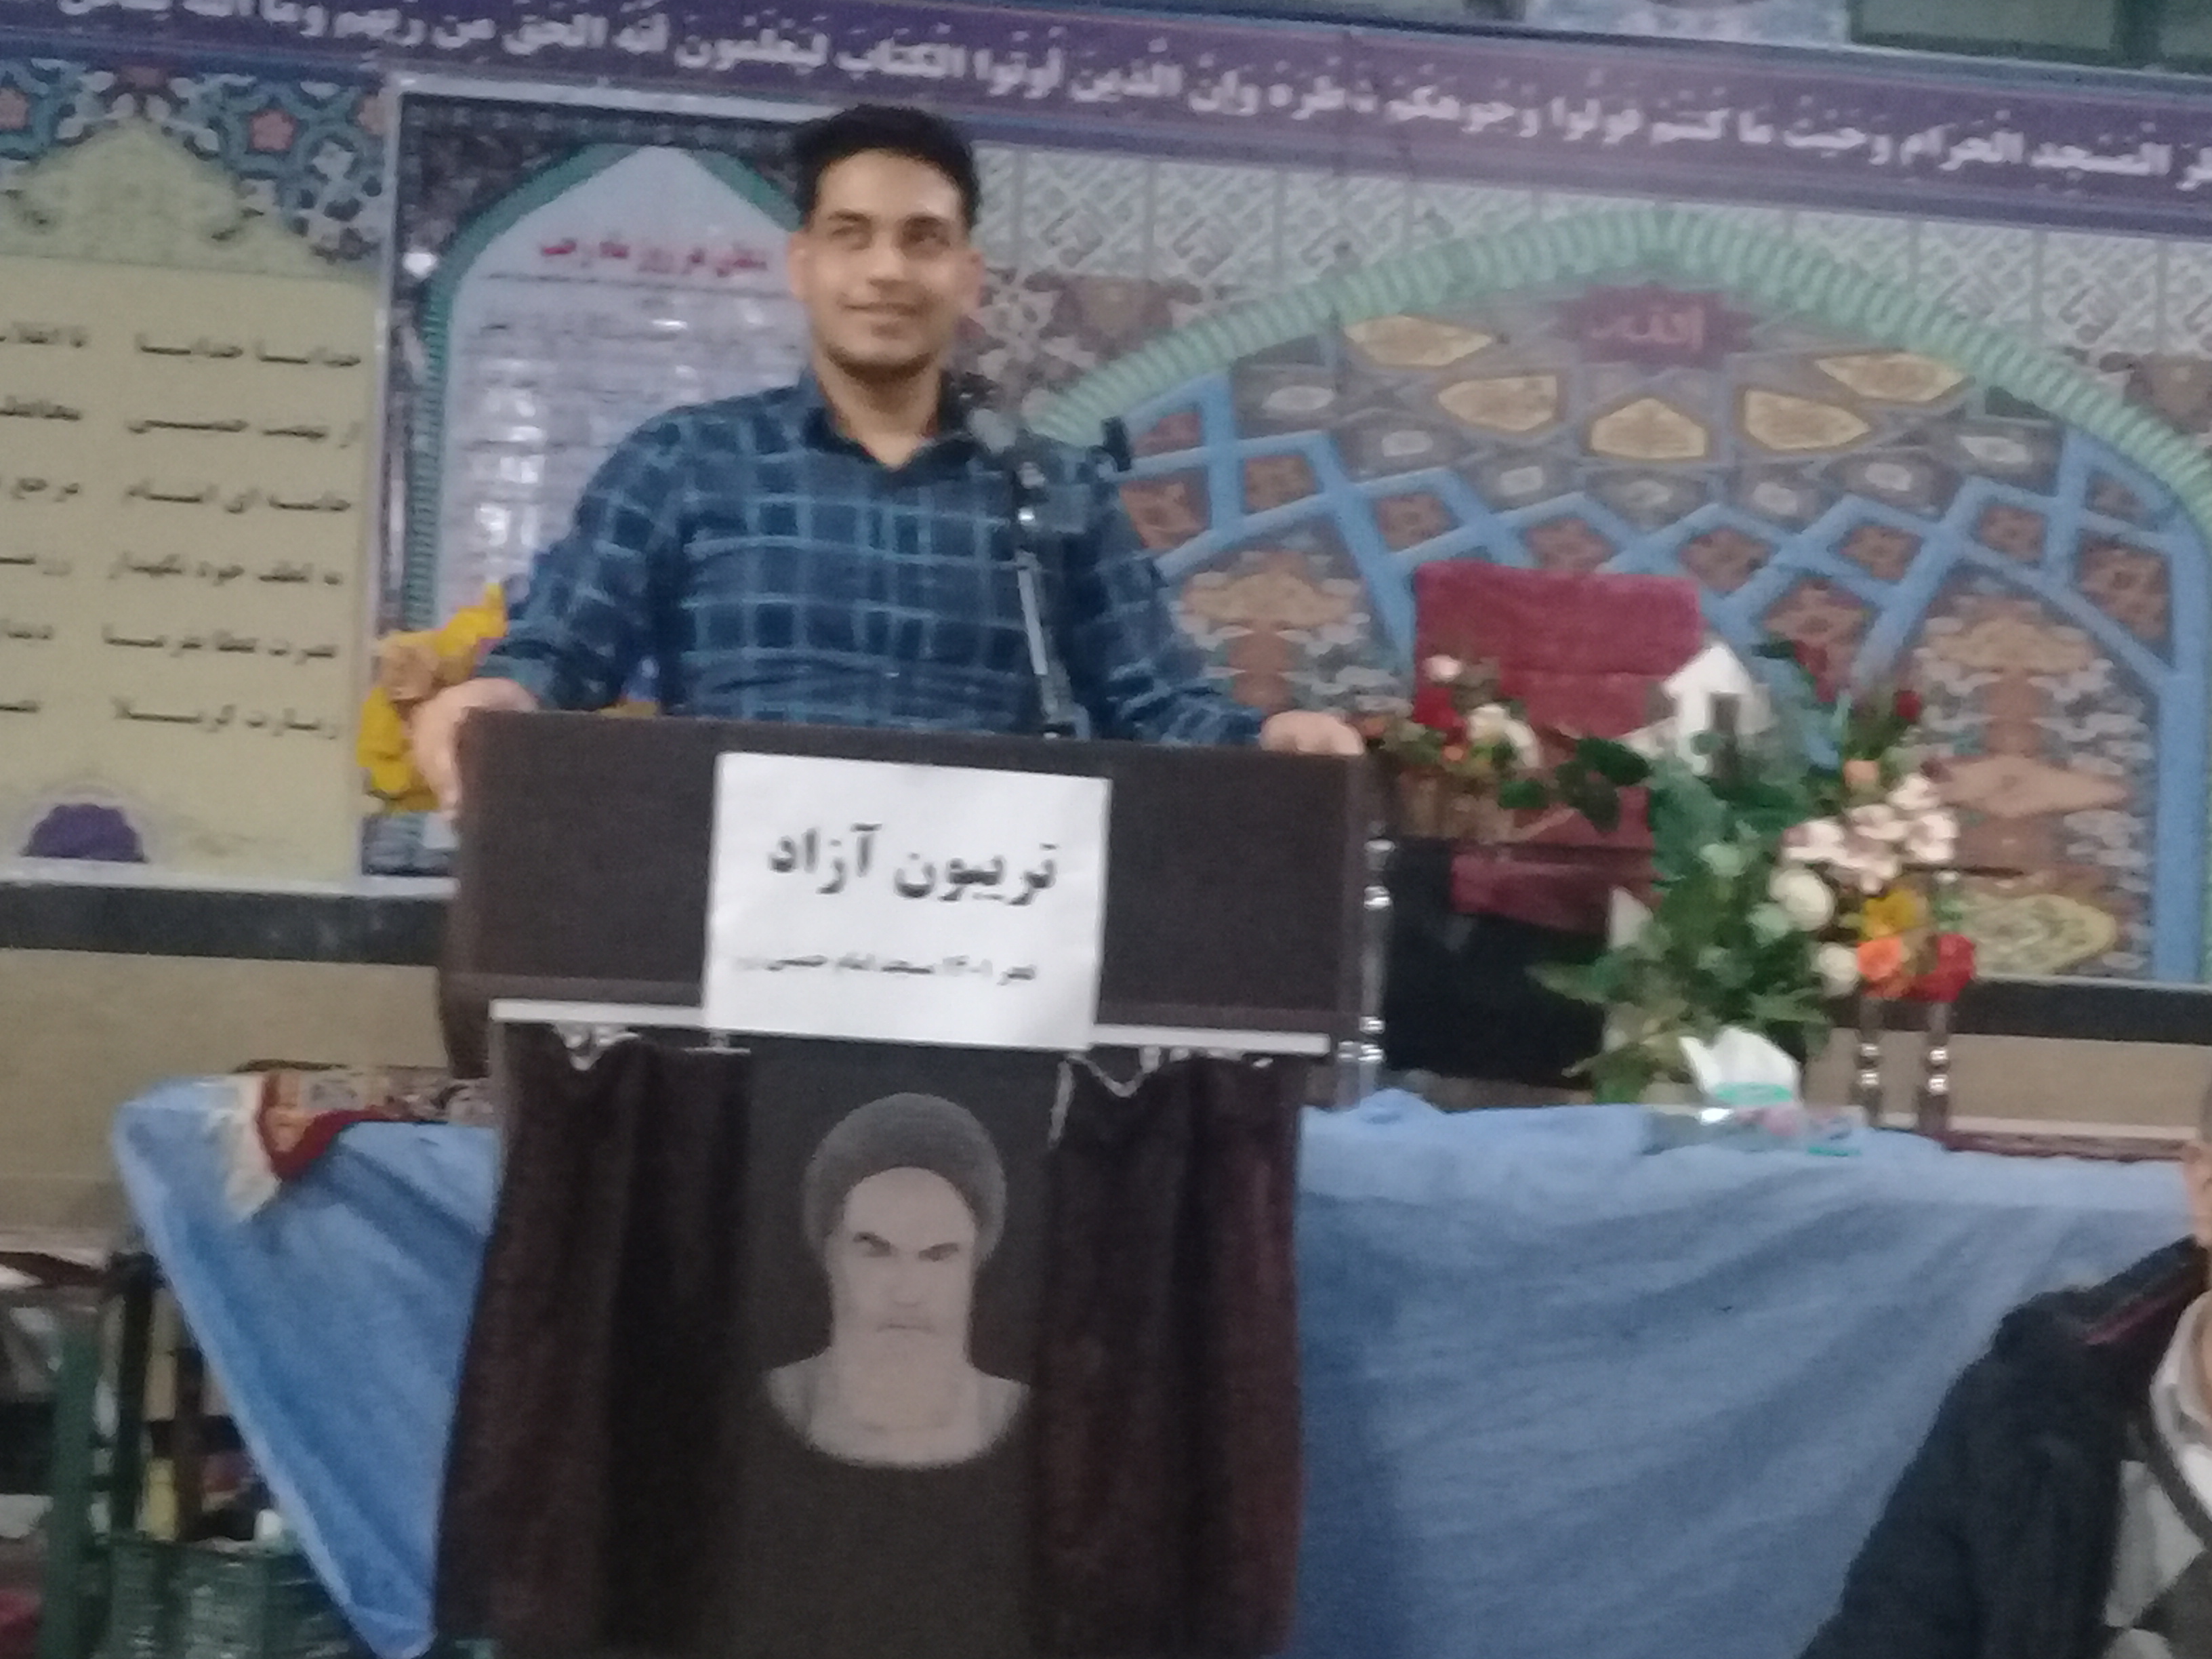  برگزاری تربیون آزاد در کانون فرهنگی هنری فجر انقلاب شاهرود